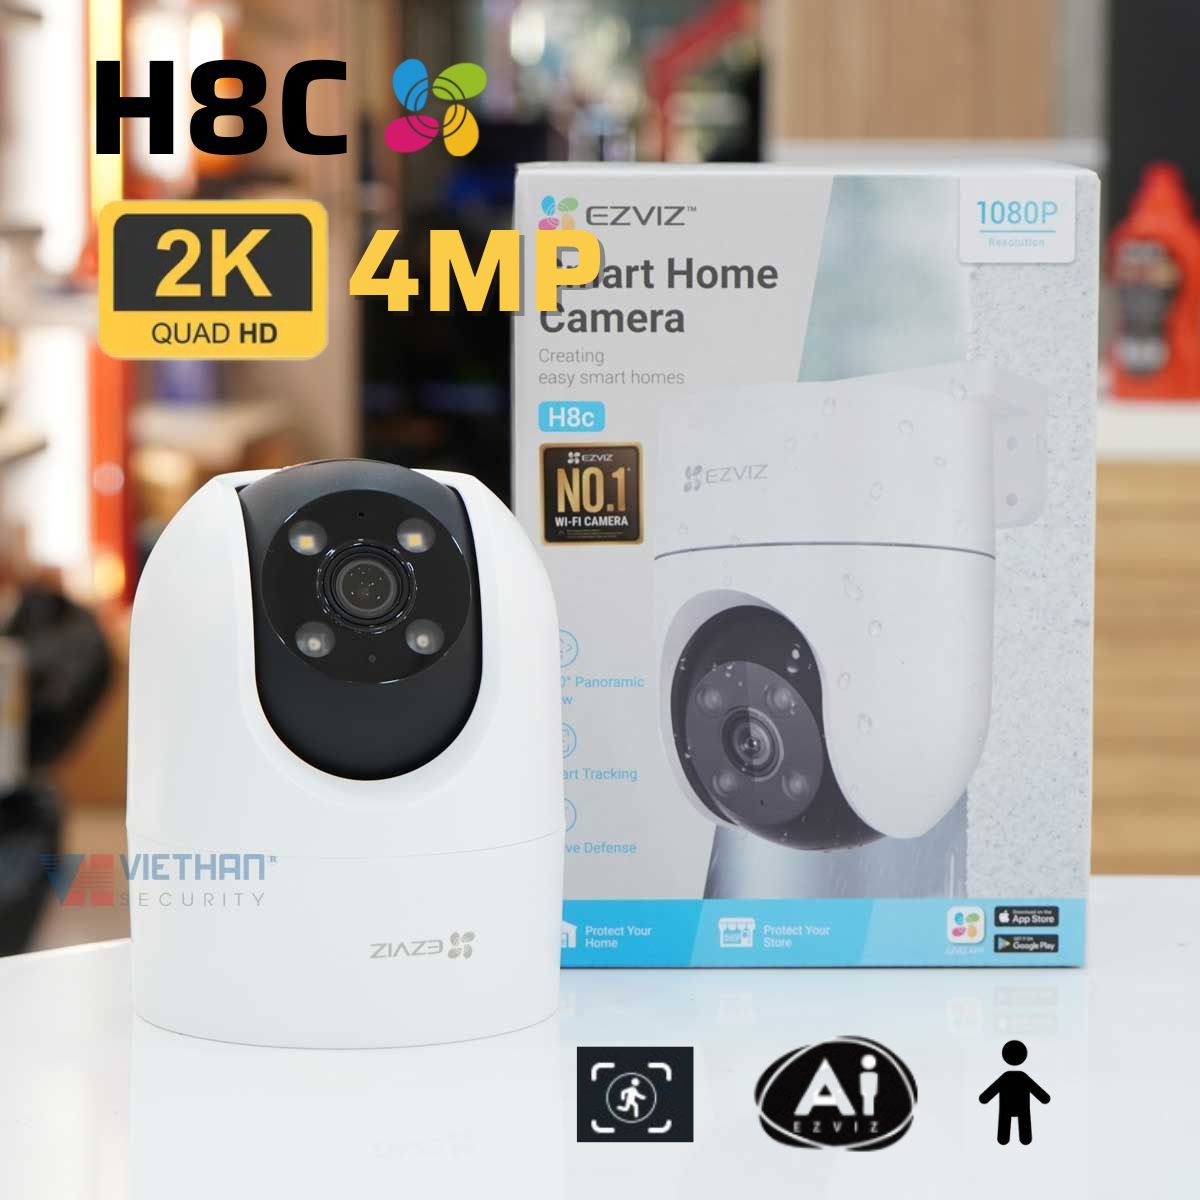 Camera Ezviz H8C 2K 4MP, đèn còi báo động, wifi quay quét ngoài trời